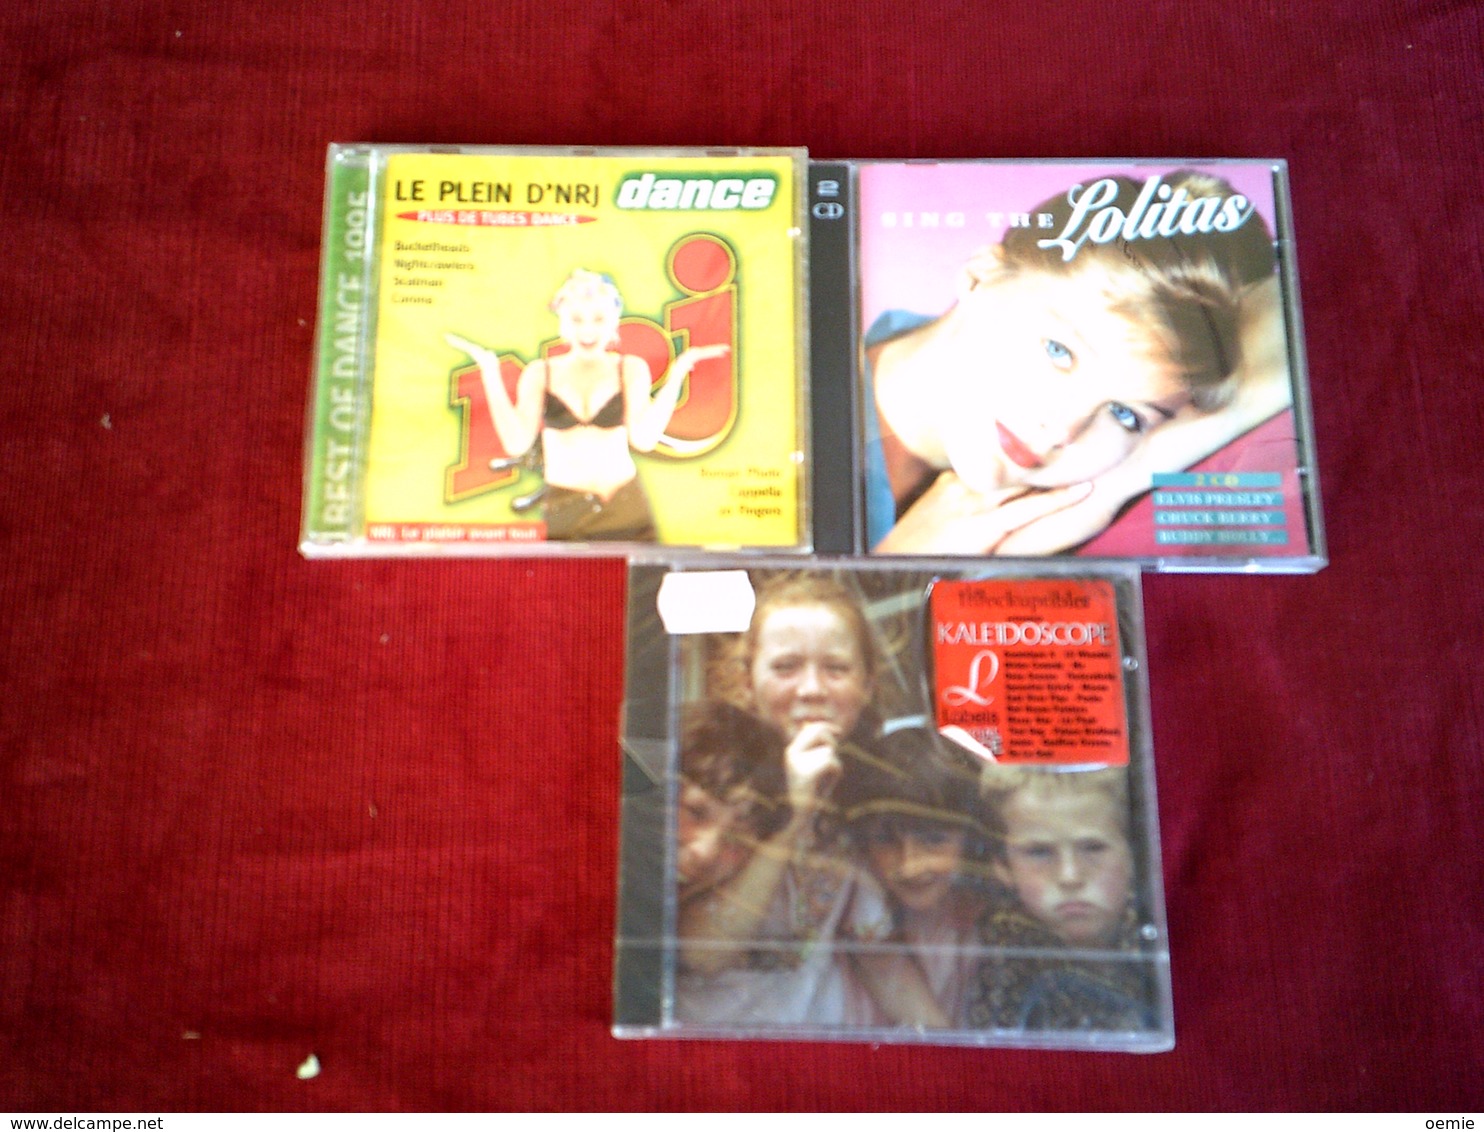 COLLECTION DE 3 CD ALBUMS  DE COMPILATION ° SONG THE LOLITAS  DOUBLE ALBUM + KALE1DOSCOPE + NRJ  BEST 1995 - Collections Complètes